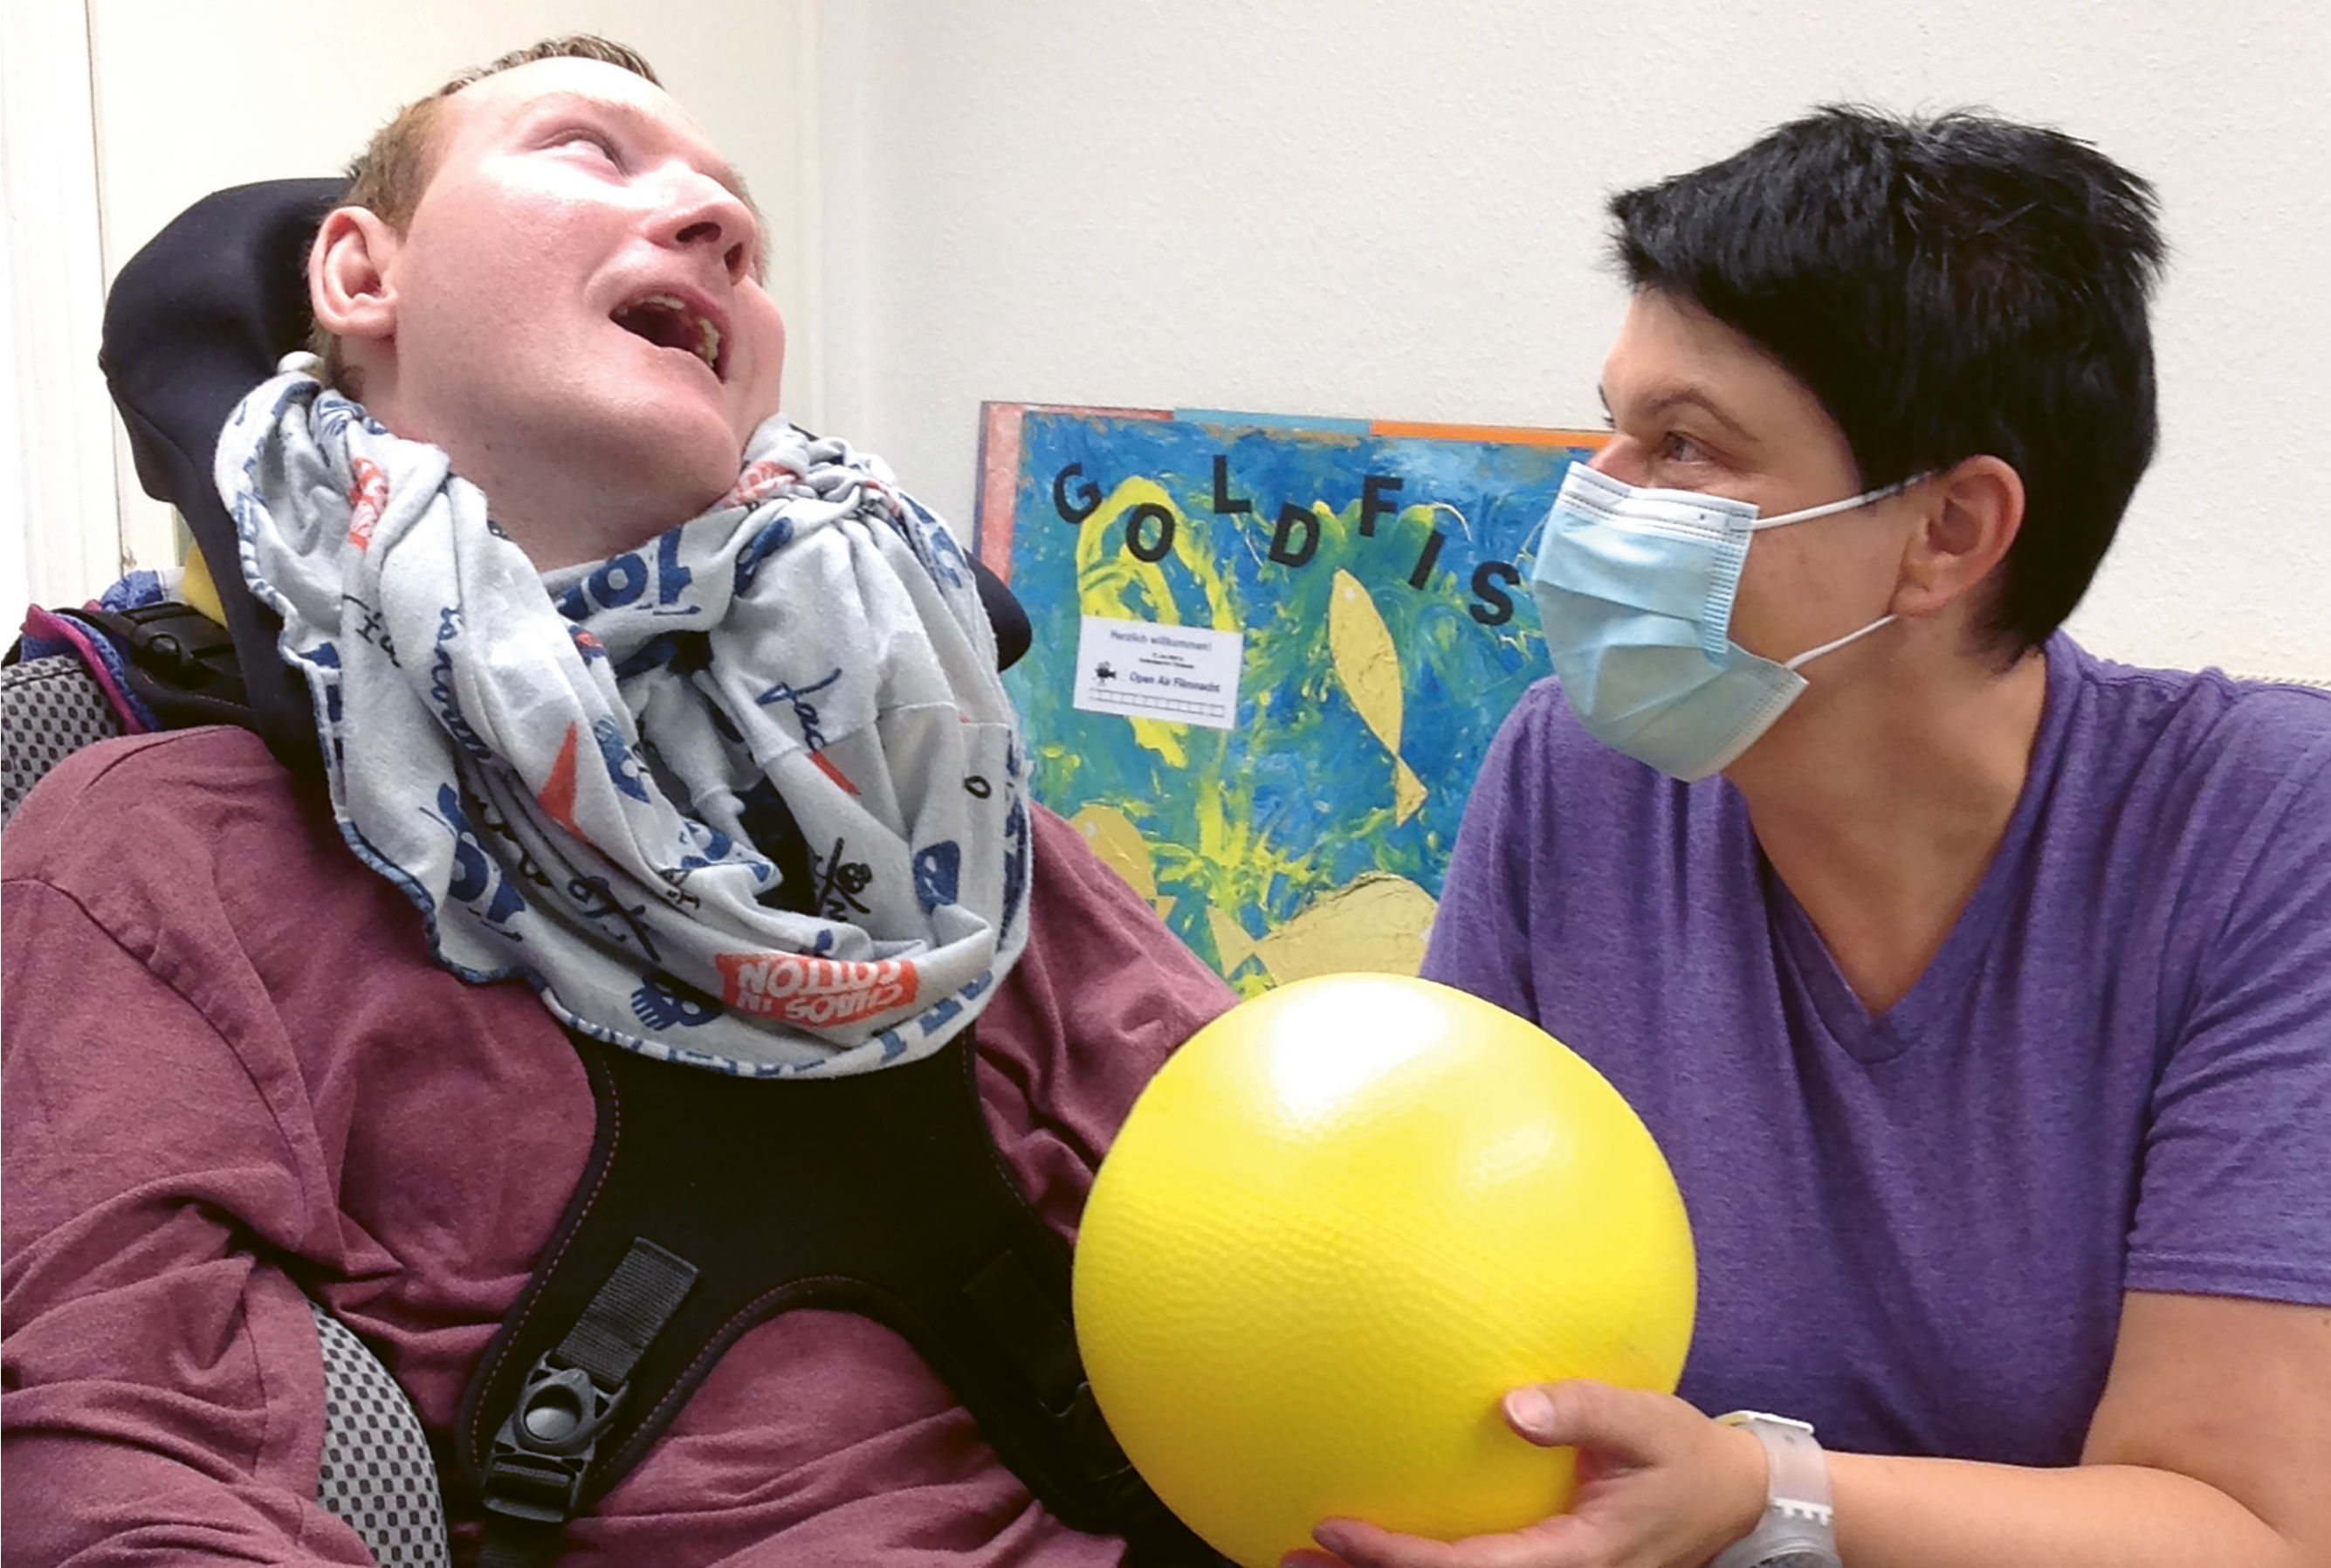 Steffi Kallenbach, die einen Mundschutz trägt, kniet neben einer Person im Rollstuhl und hat einen gelben Ball in der Hand.